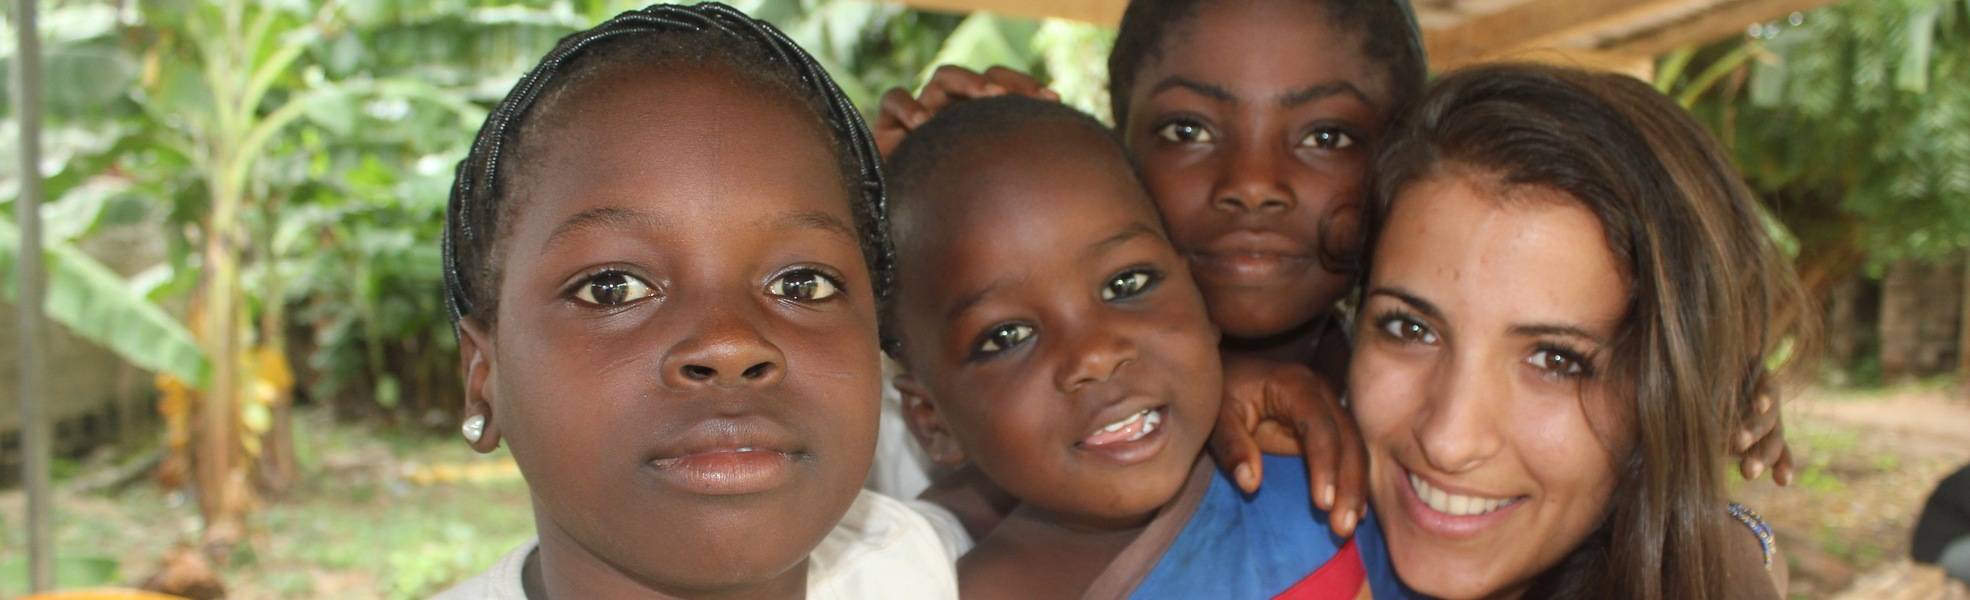 Freiwilligenarbeit im Straßenkinder Projekt in Ghana